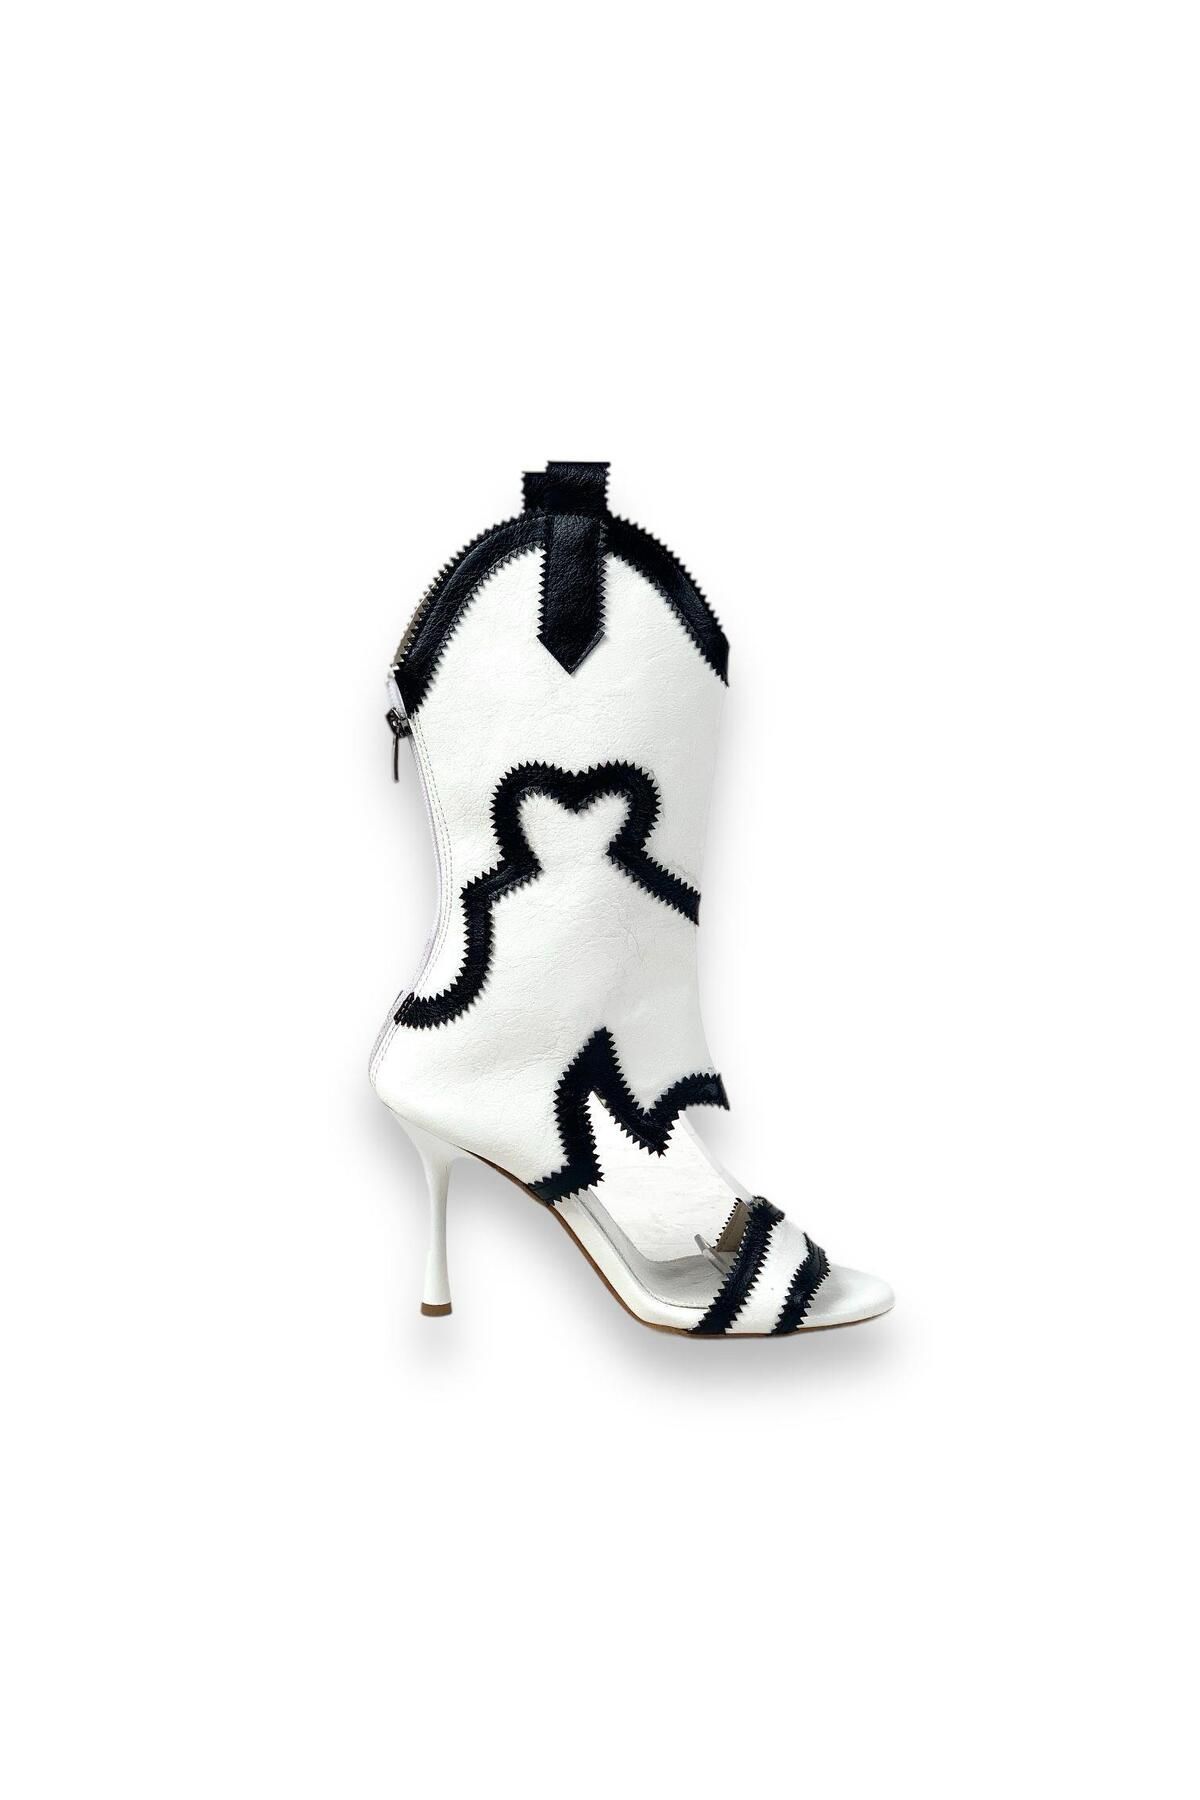 bescobel Kadın Oklam Beyaz İnce Topuk Yazlık Kovboy Çizme Ayakkabı 10 cm 2001